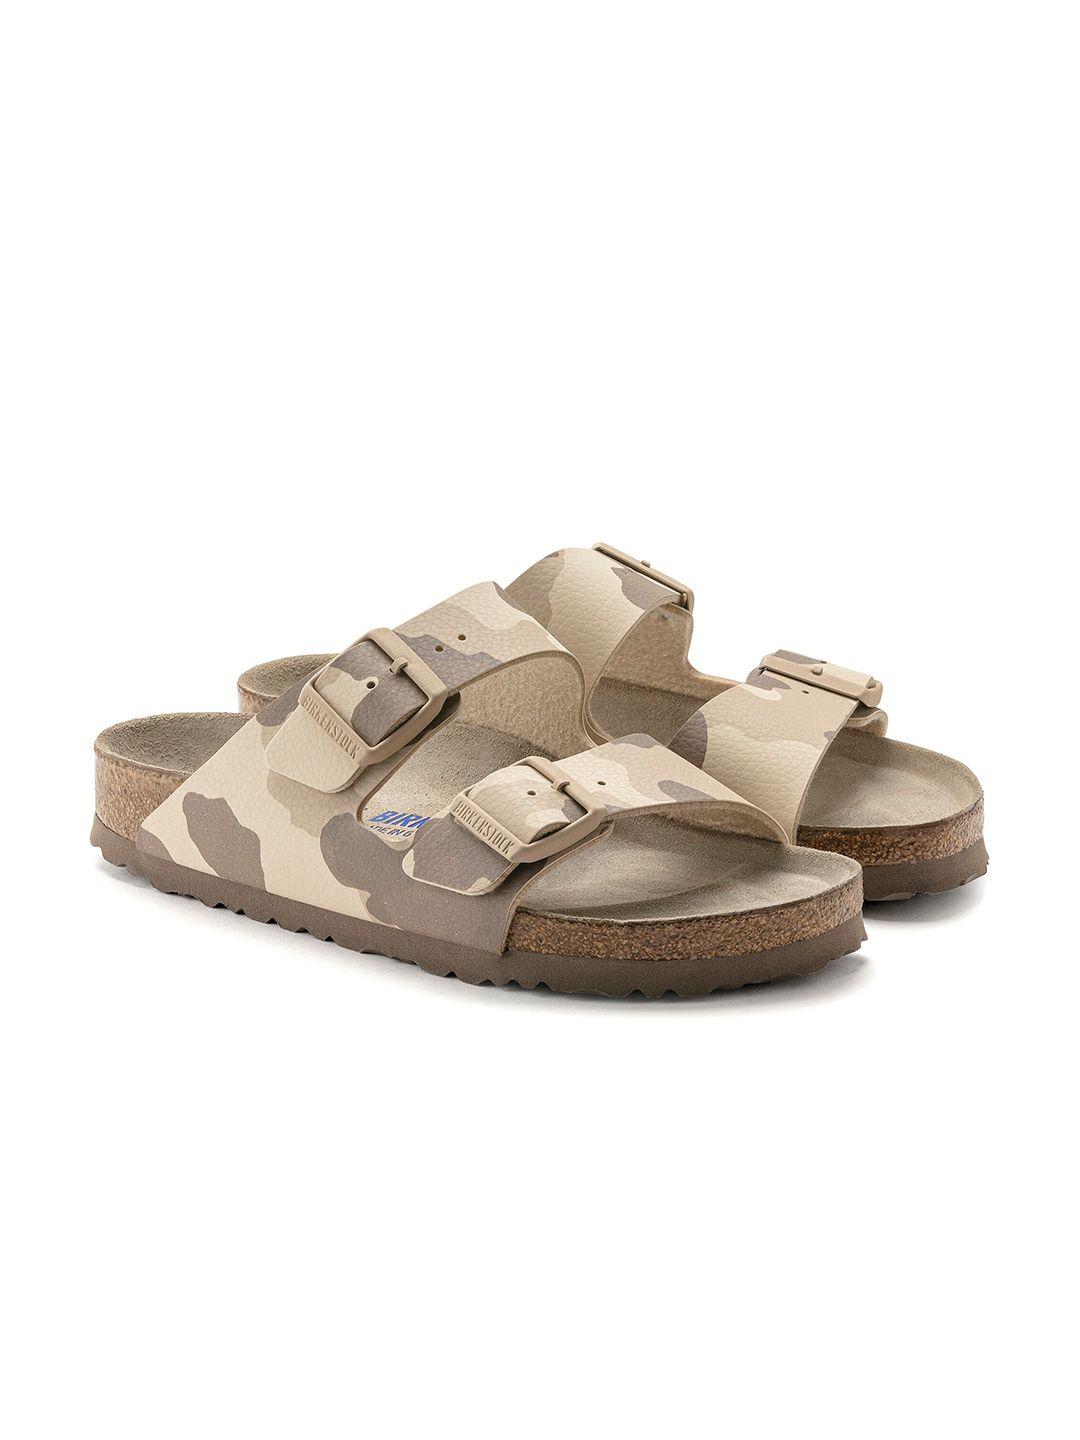 birkenstock arizona printed narrow width two-strap comfort sandals